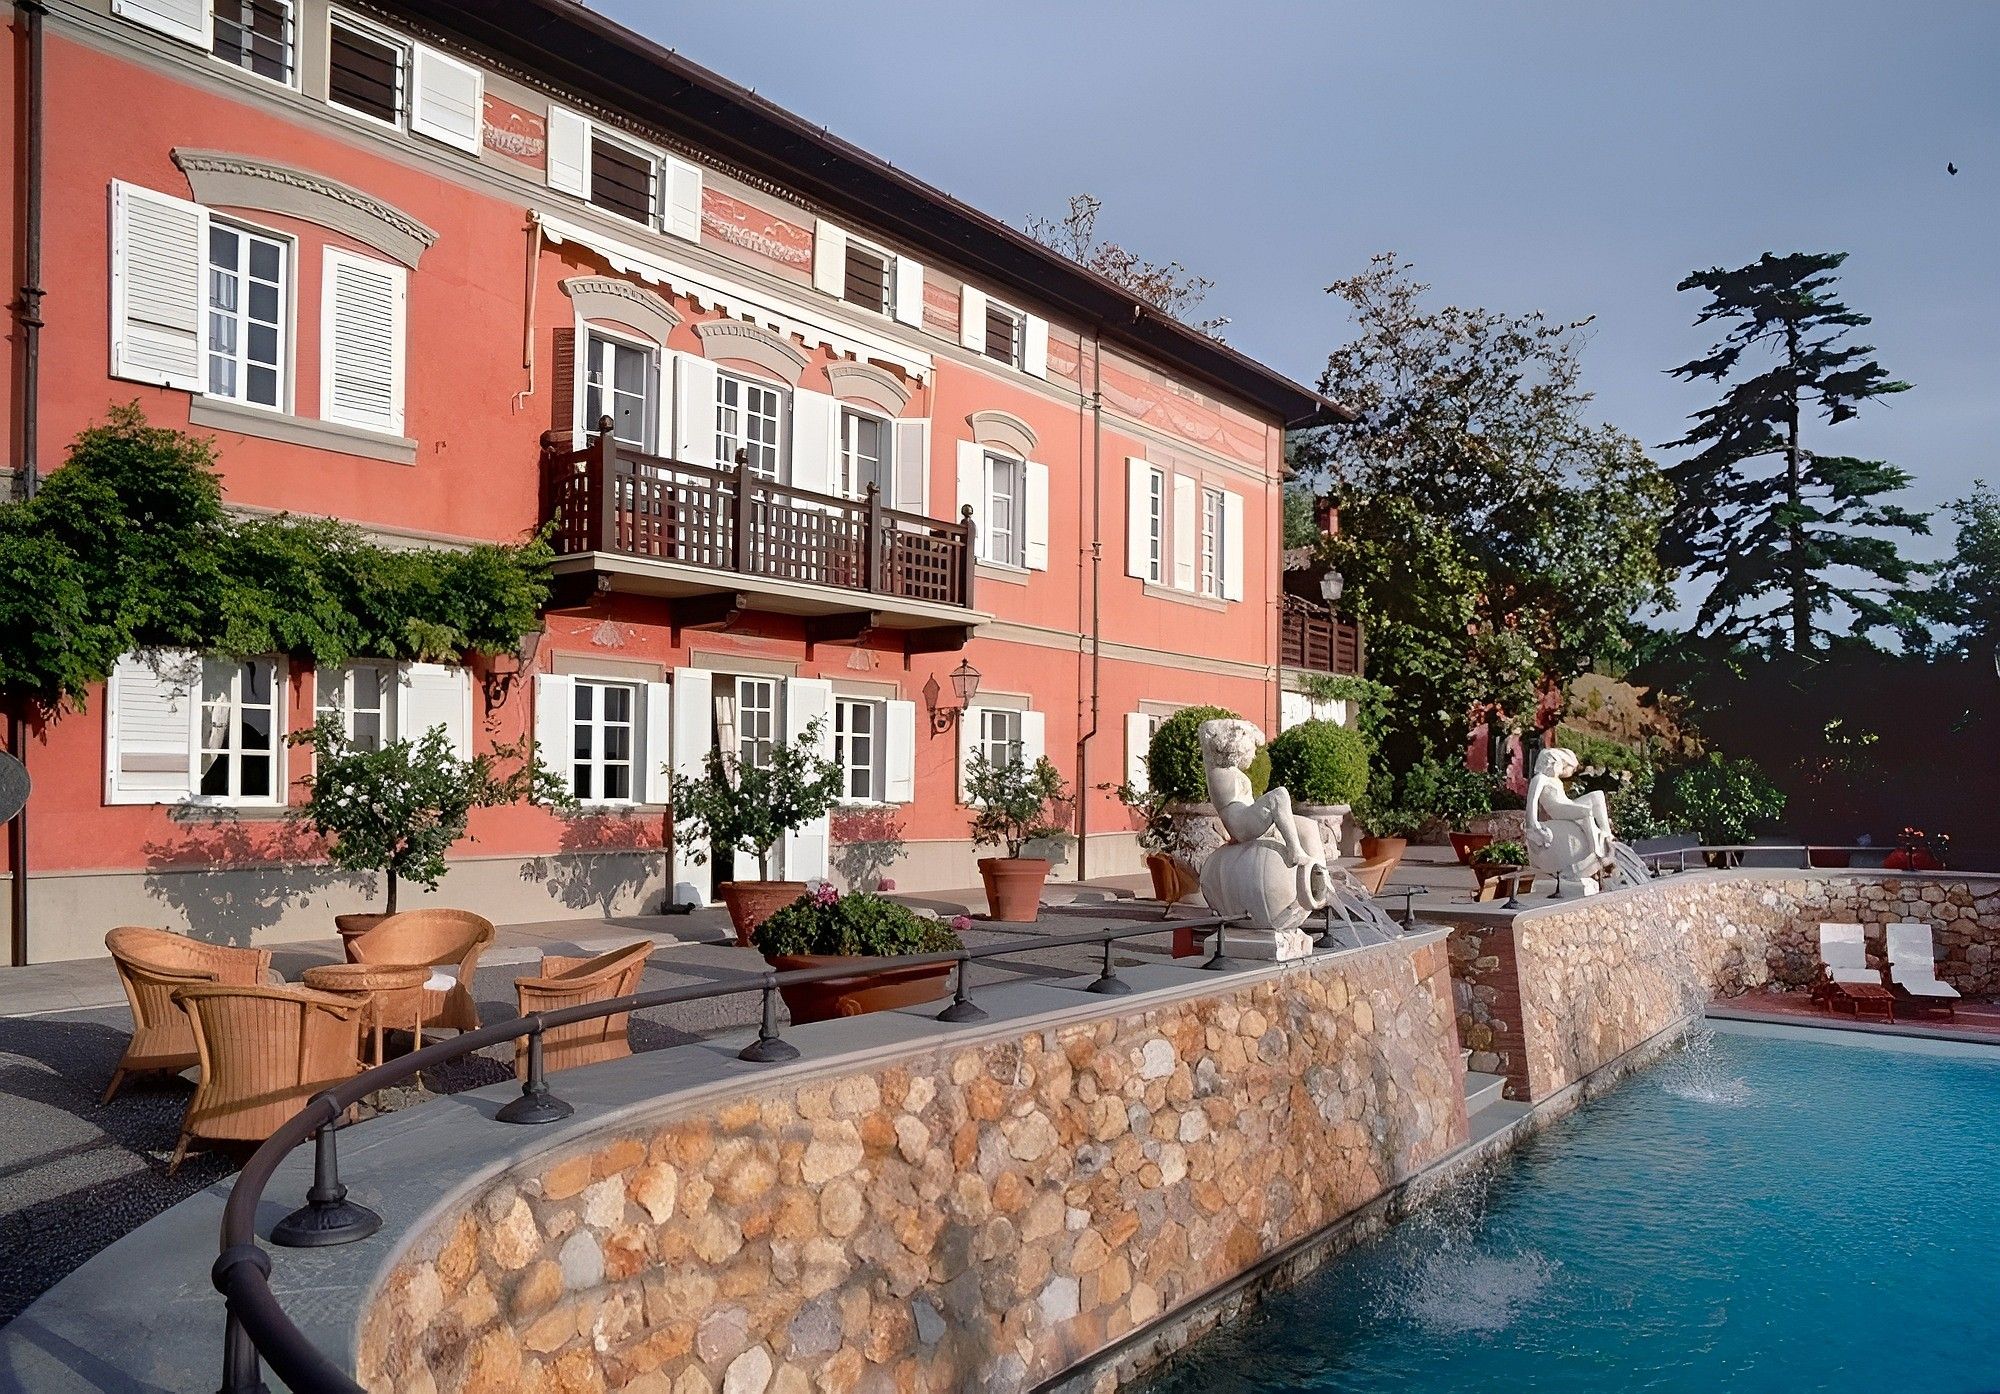 Images Indrukwekkende villa in Toscane, vlakbij het kasteel van Lari